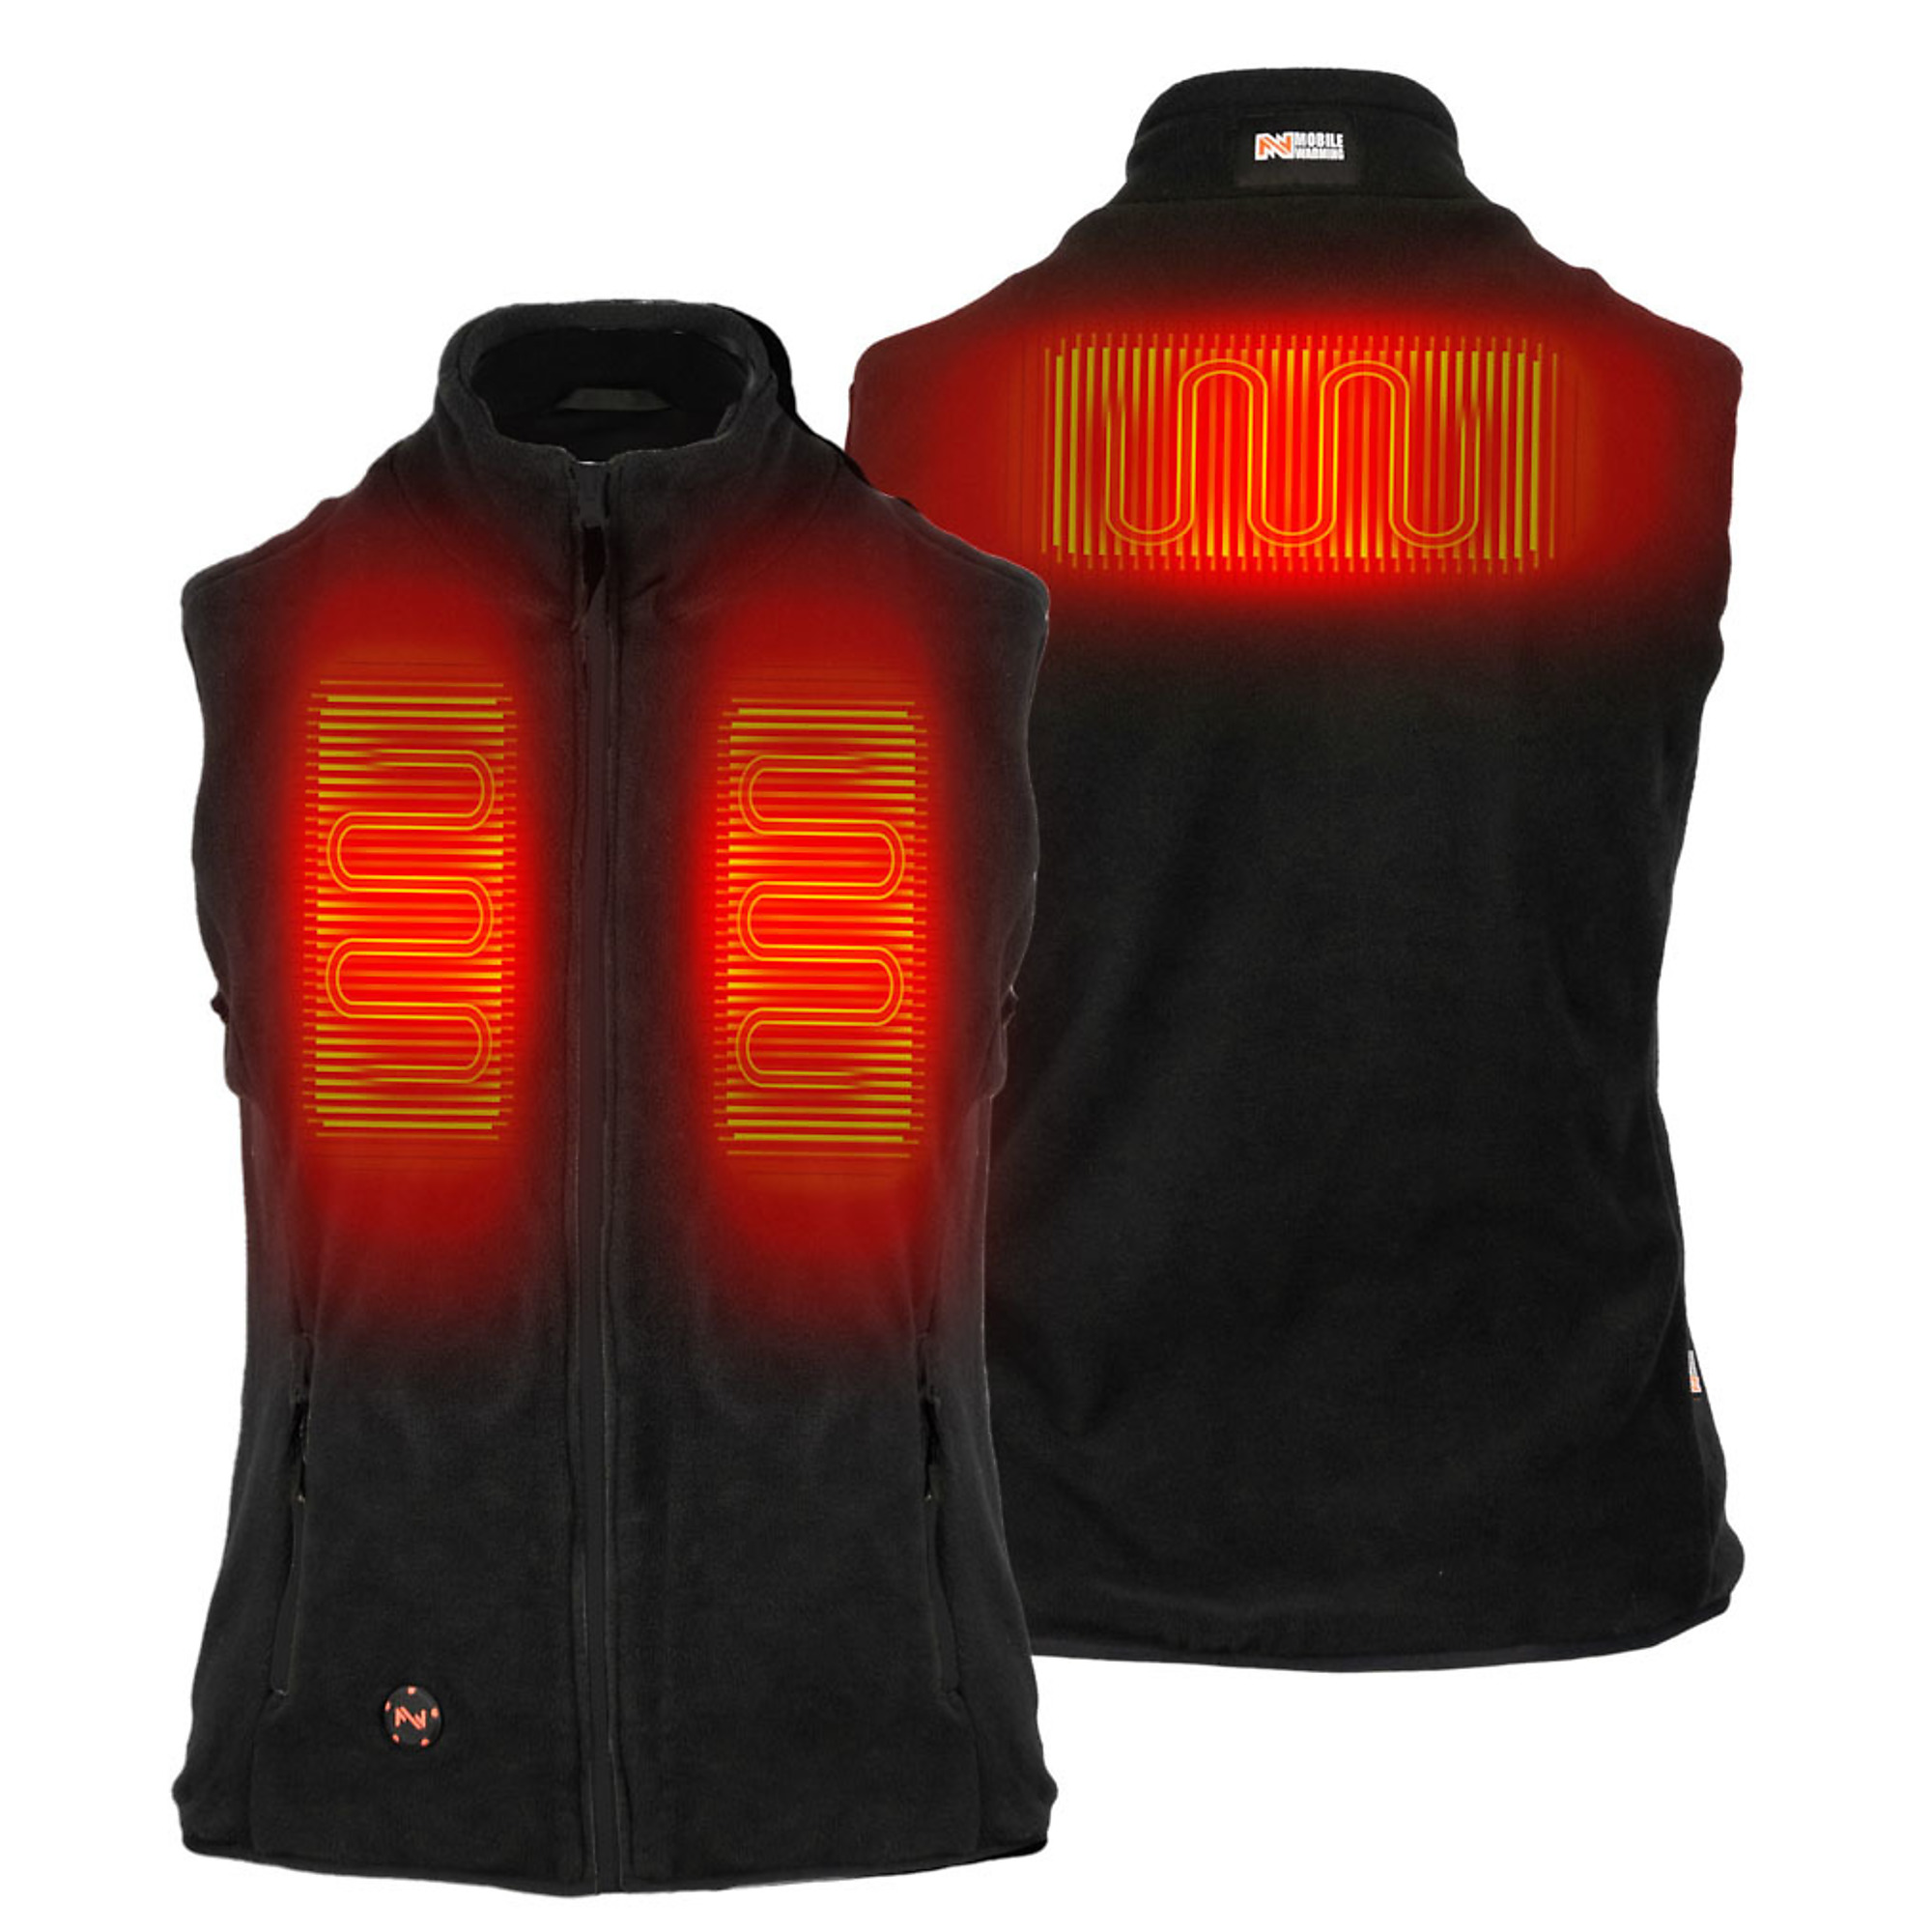 Fieldsheer, Women's Trek Heated Vest with 7.4v Battery, Size L, Color Black, Model MWWV18010422